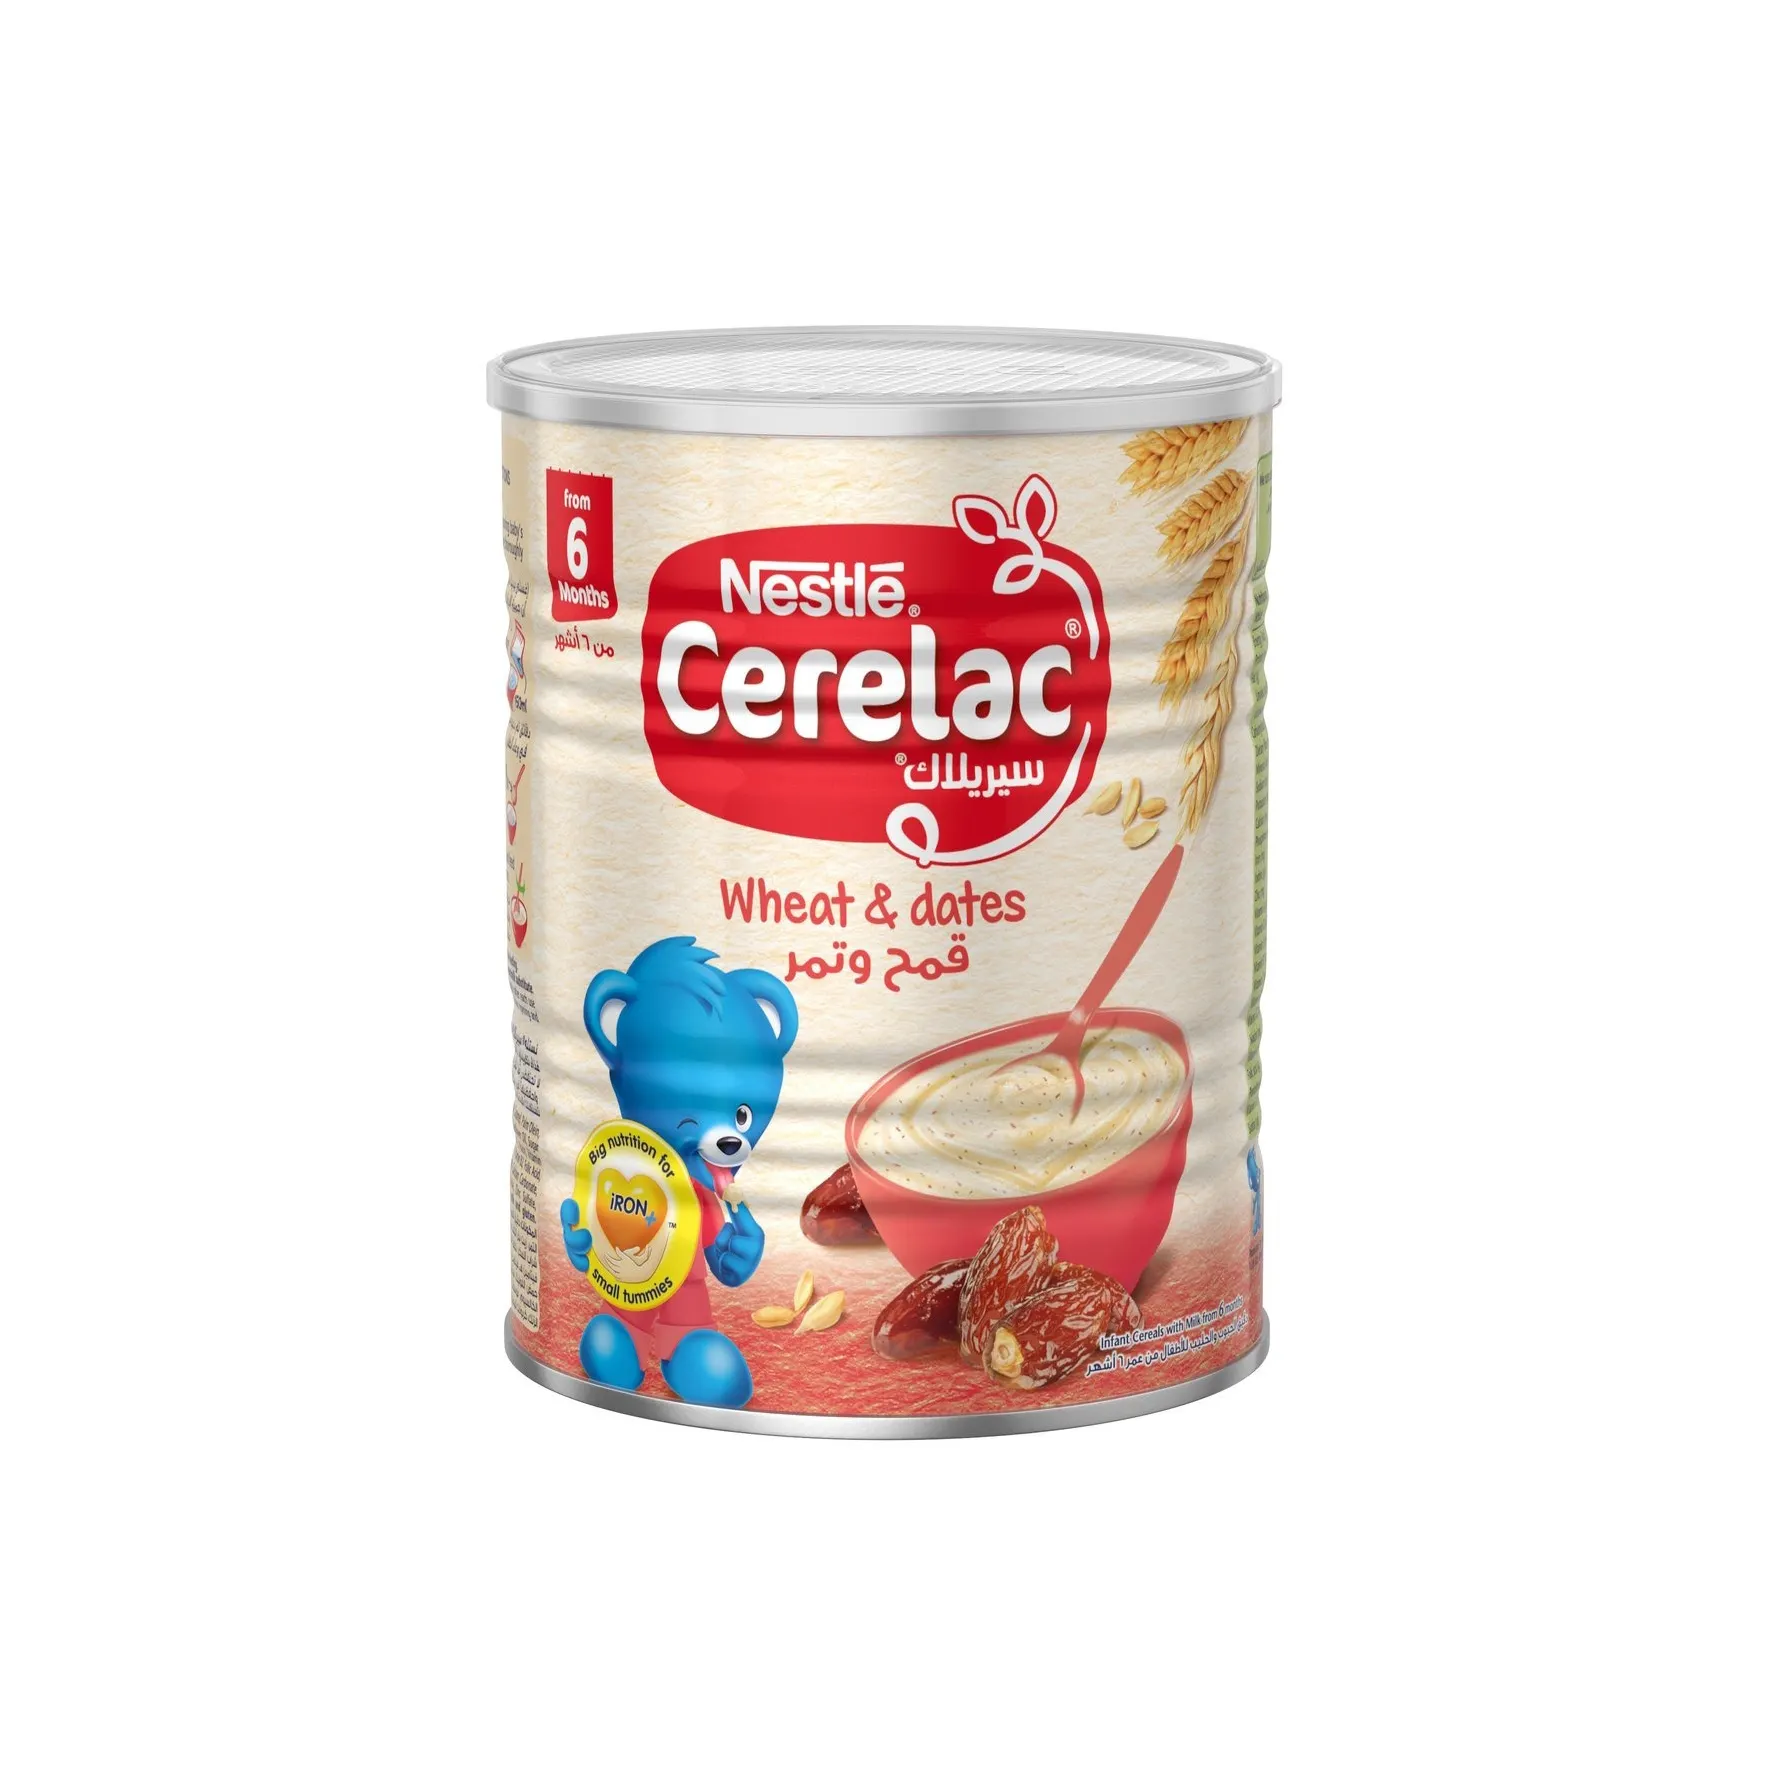 Cer-elac instant cer-eals Nestle Cer-elac 400g Cheapest Price Supplier Bulk Nestle Cer-elac